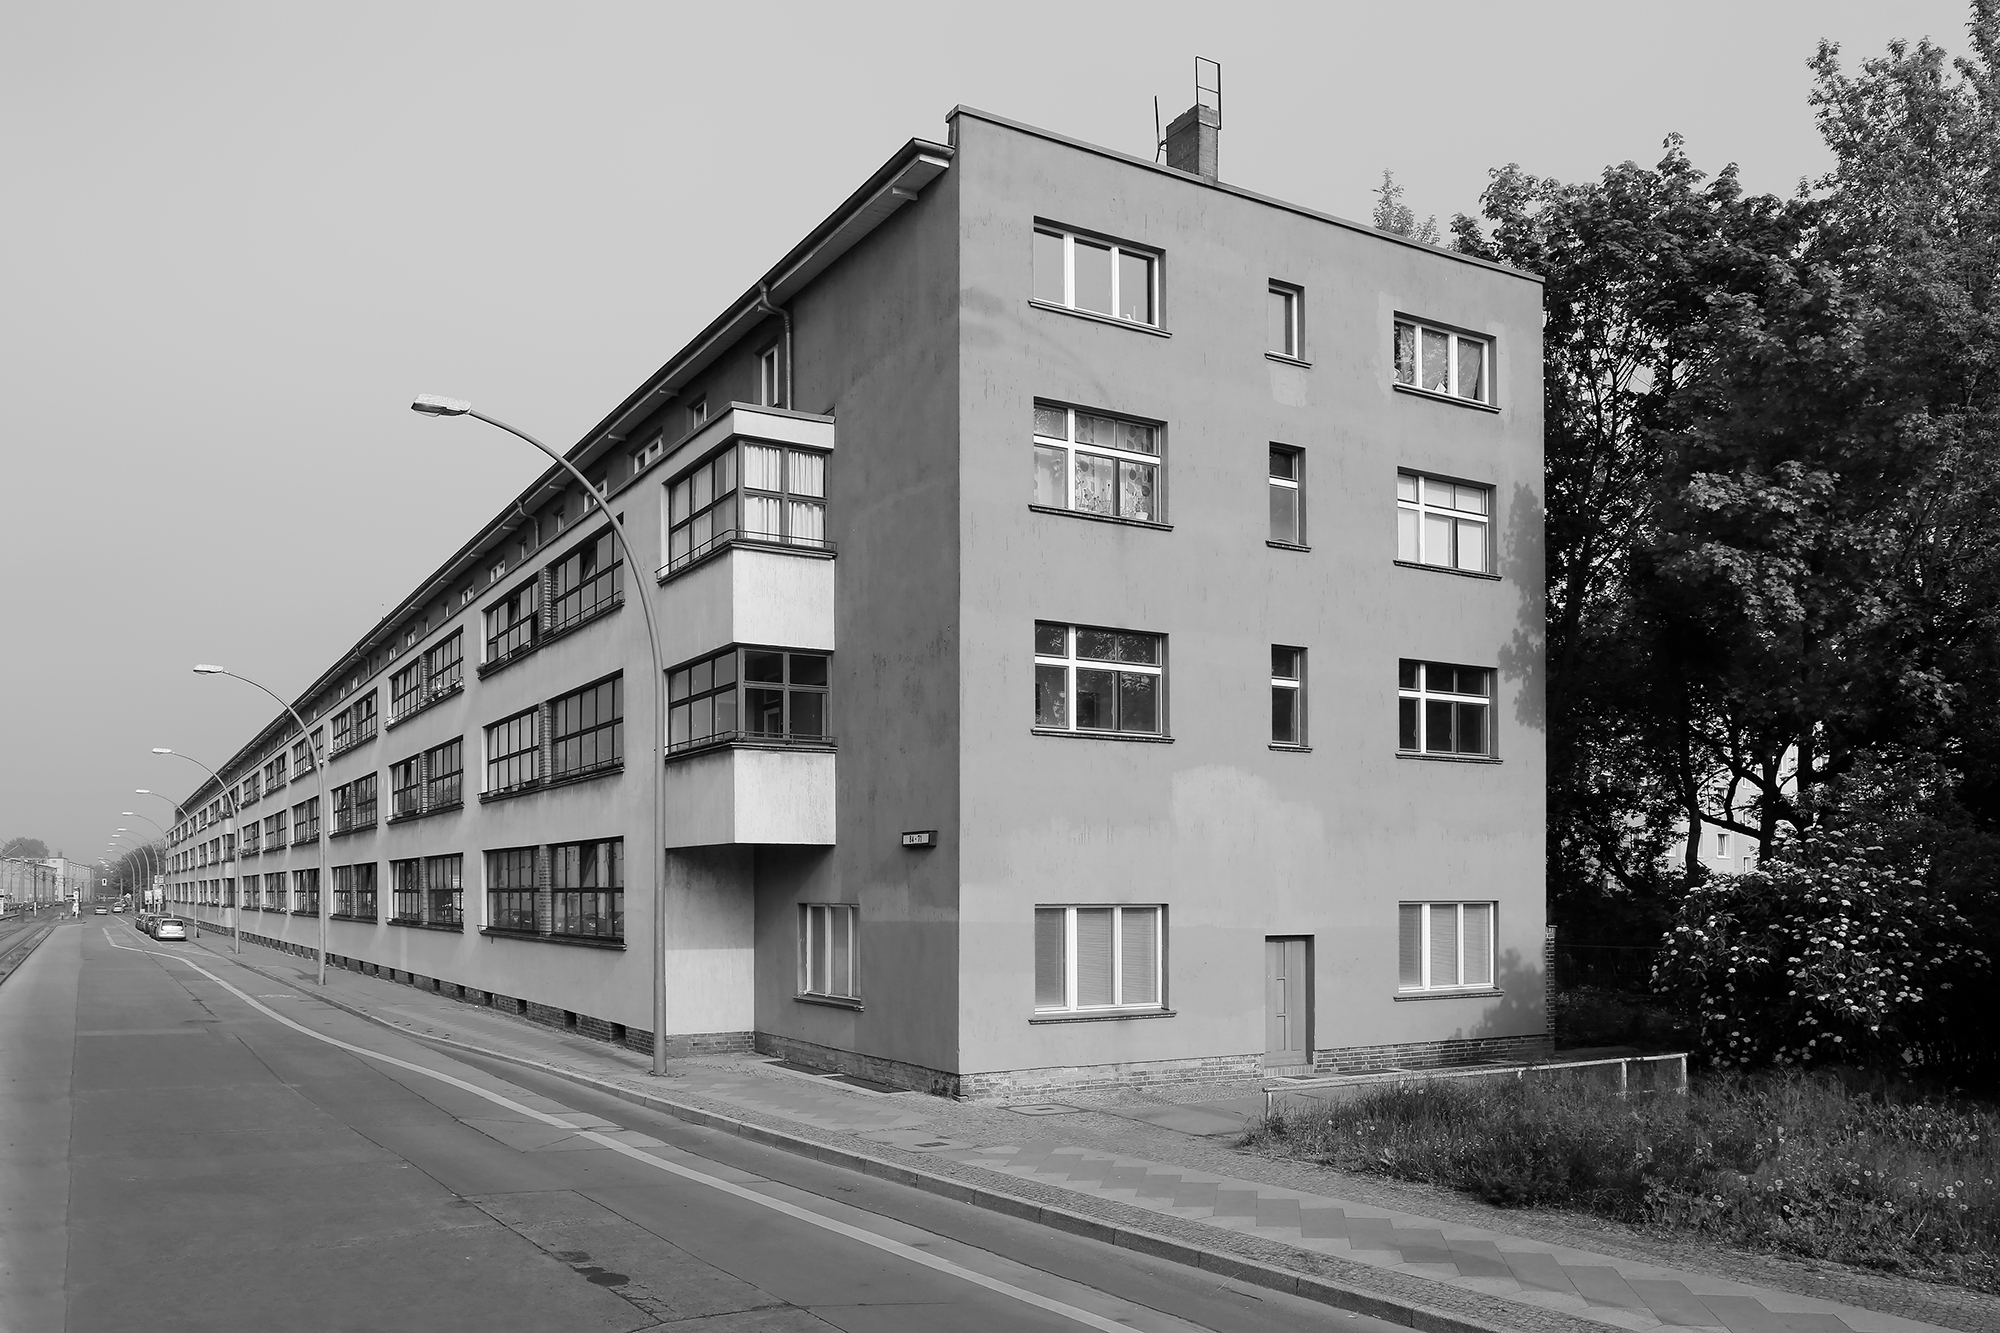 Wohnanlage GEHAG Buschallee, Weißensee, 1928-29, Architekt: Bruno Taut. Foto: Jean Molitor